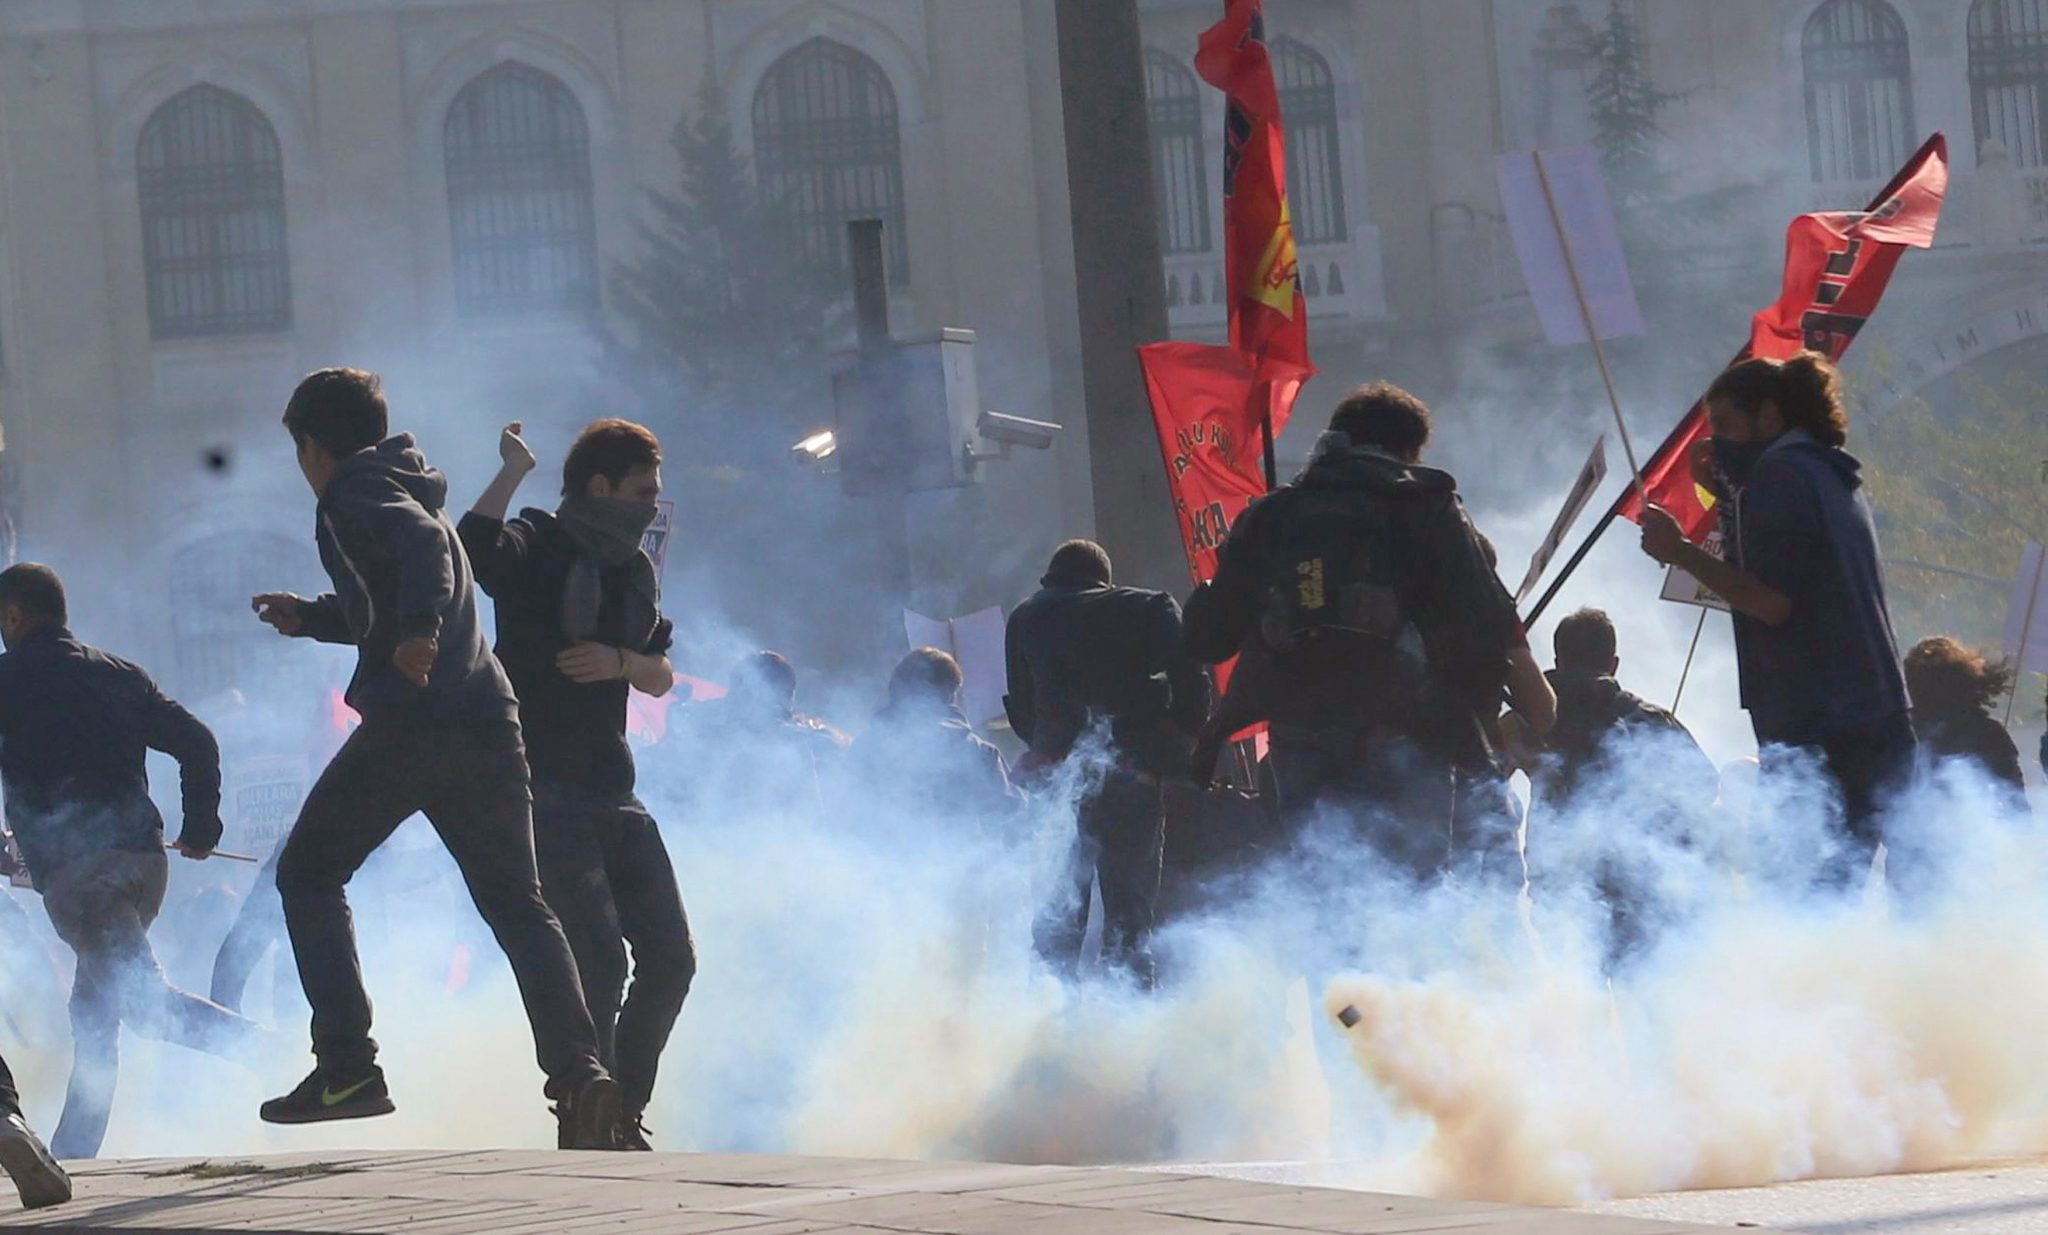   شرطة أردوغان تطلق قنابل الغاز على عمال مطار إسطنبول بعد إضرابهم